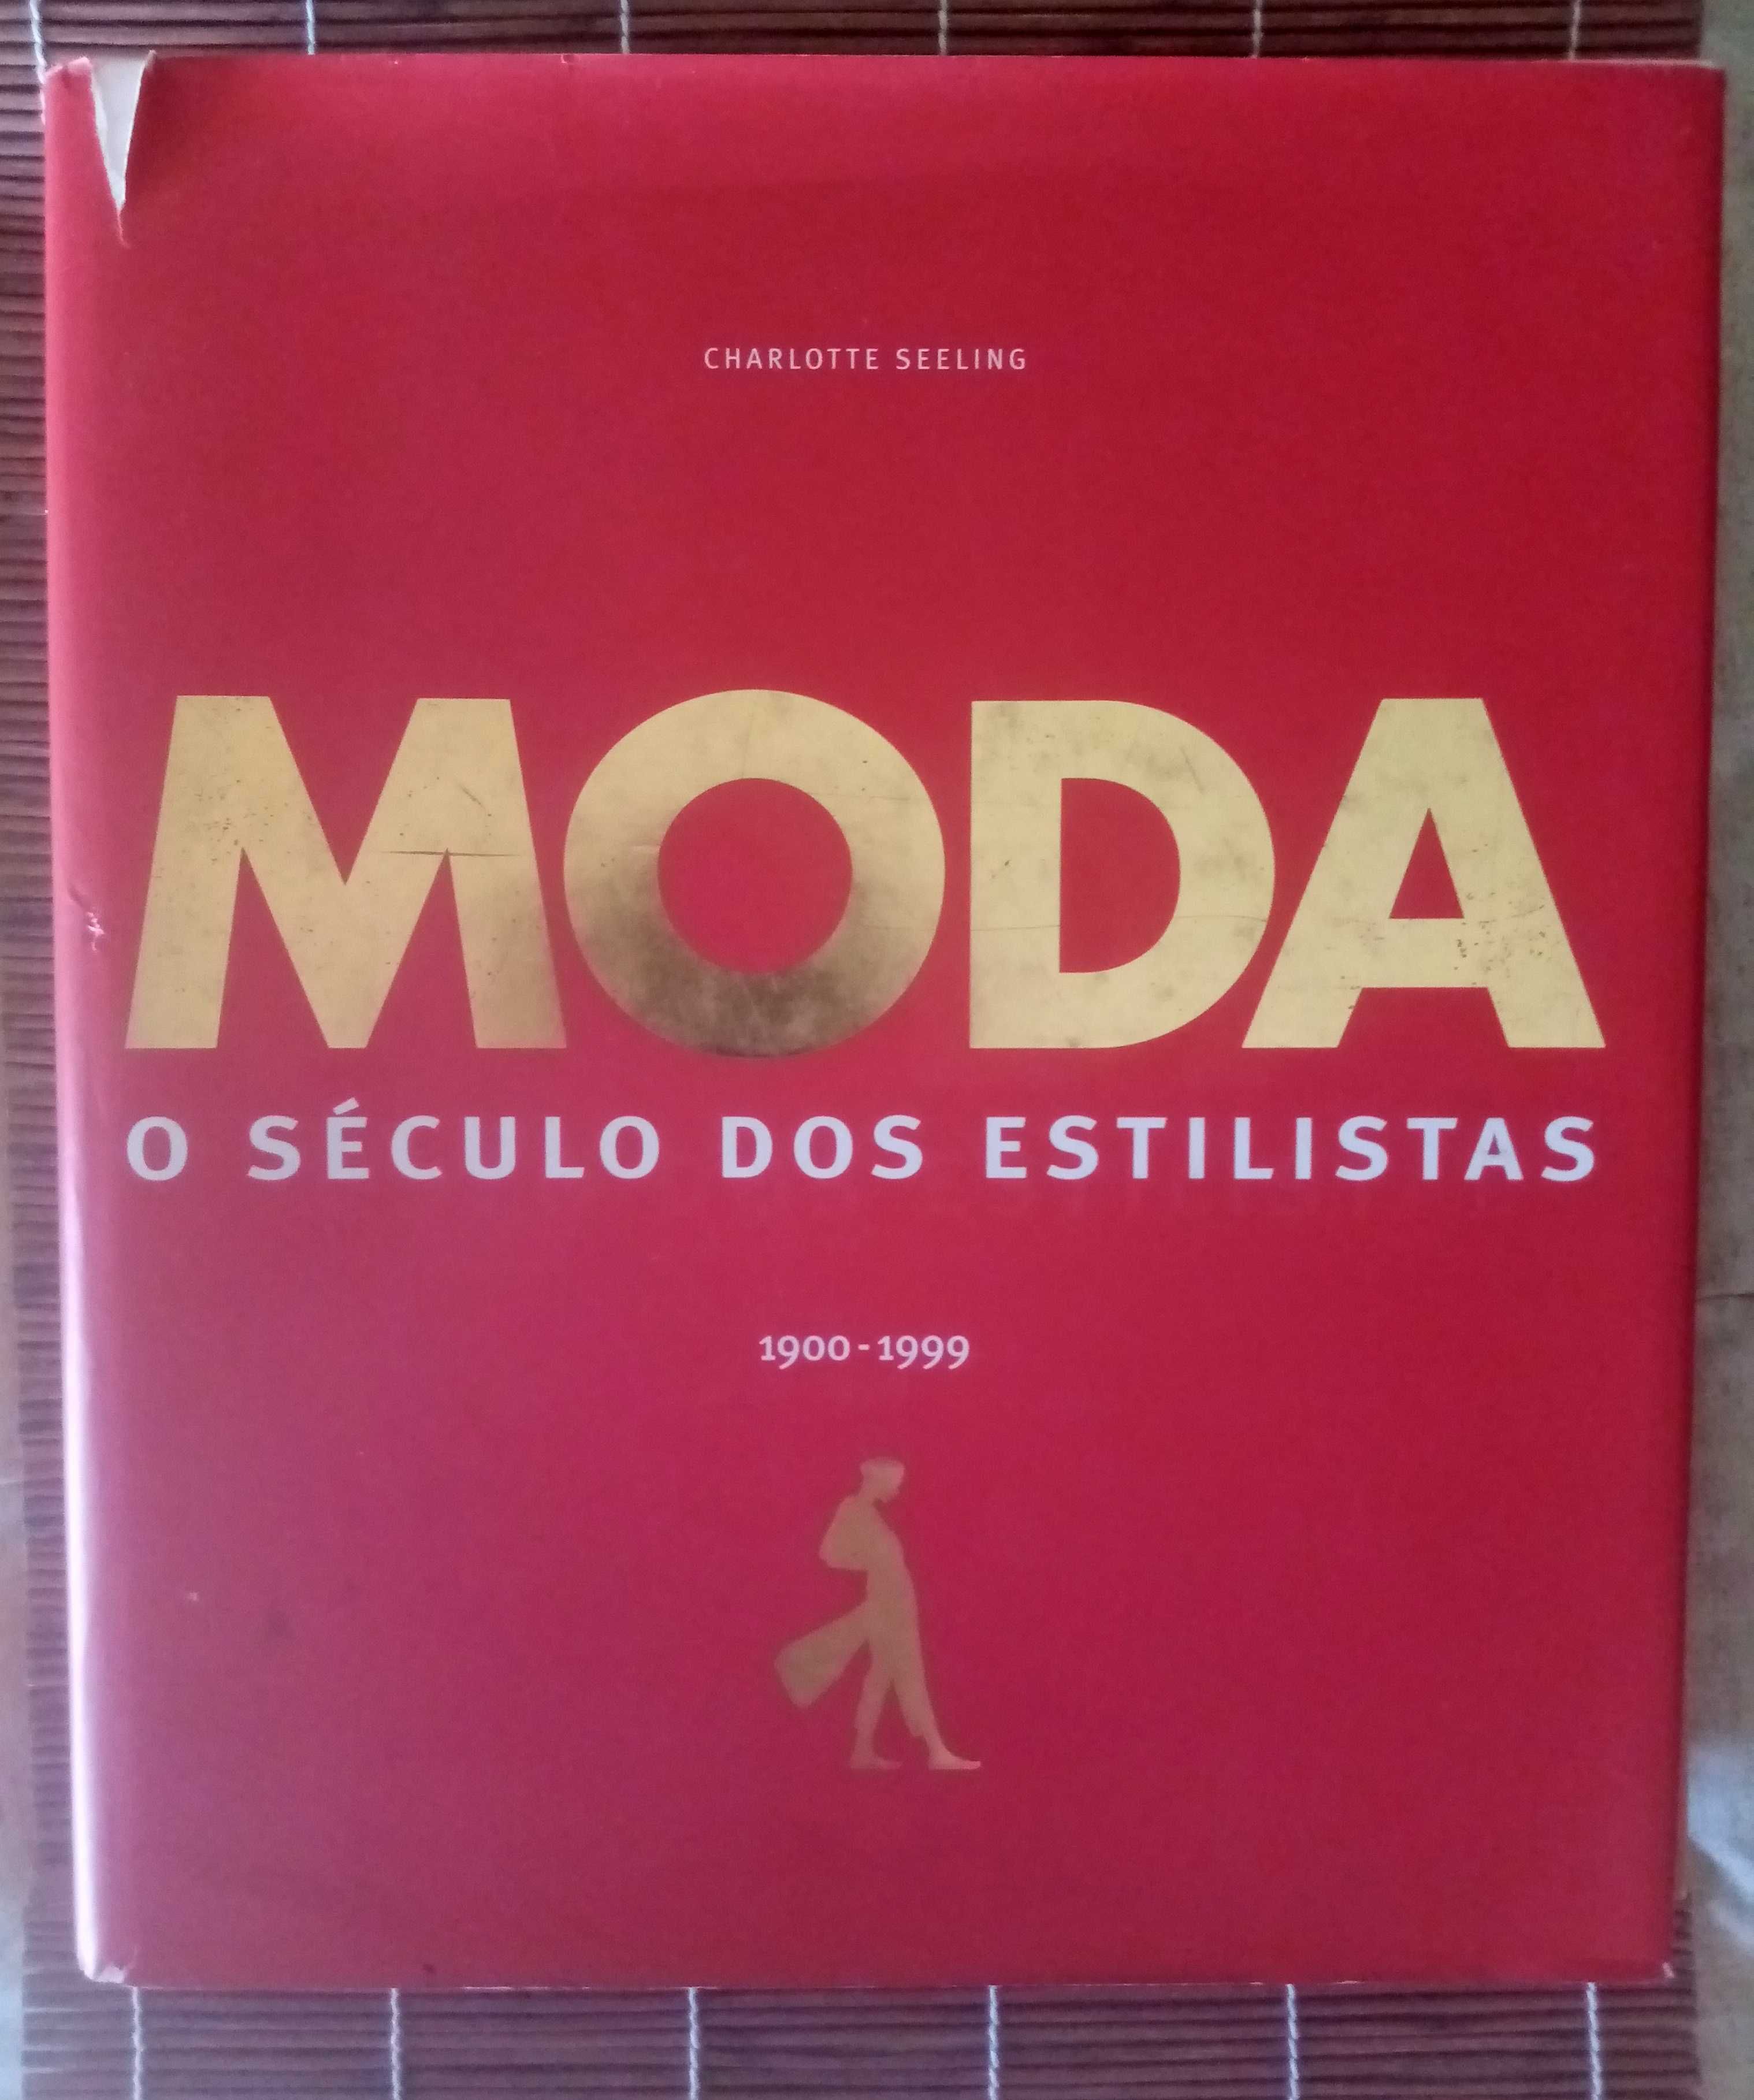 Livro "MODA: o século dos estilistas"